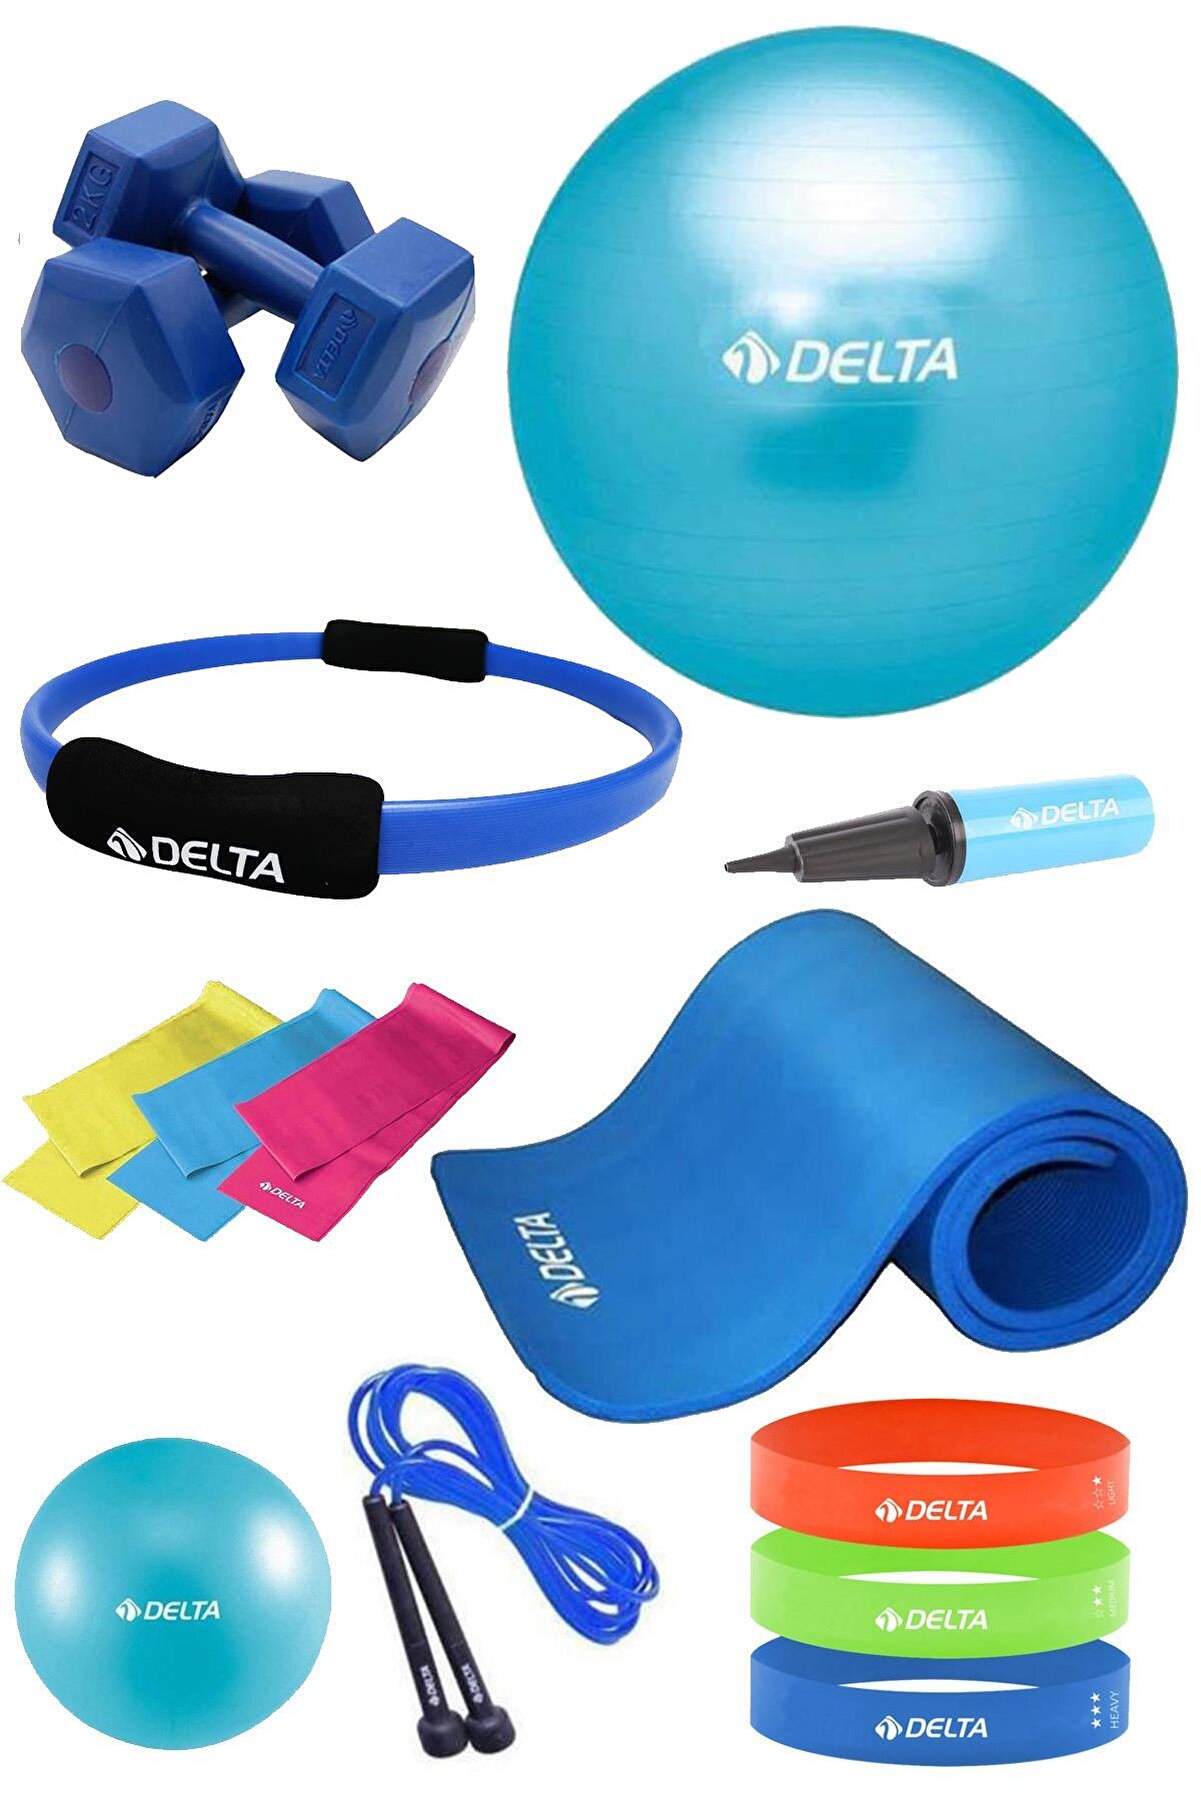 Delta Pilates Seti 85 Ana & 20 Cm Denge Topu 10 Mm Minderi Çemberi 3lü Direnç Bandı 2 Kg Dambıl atlama ipi